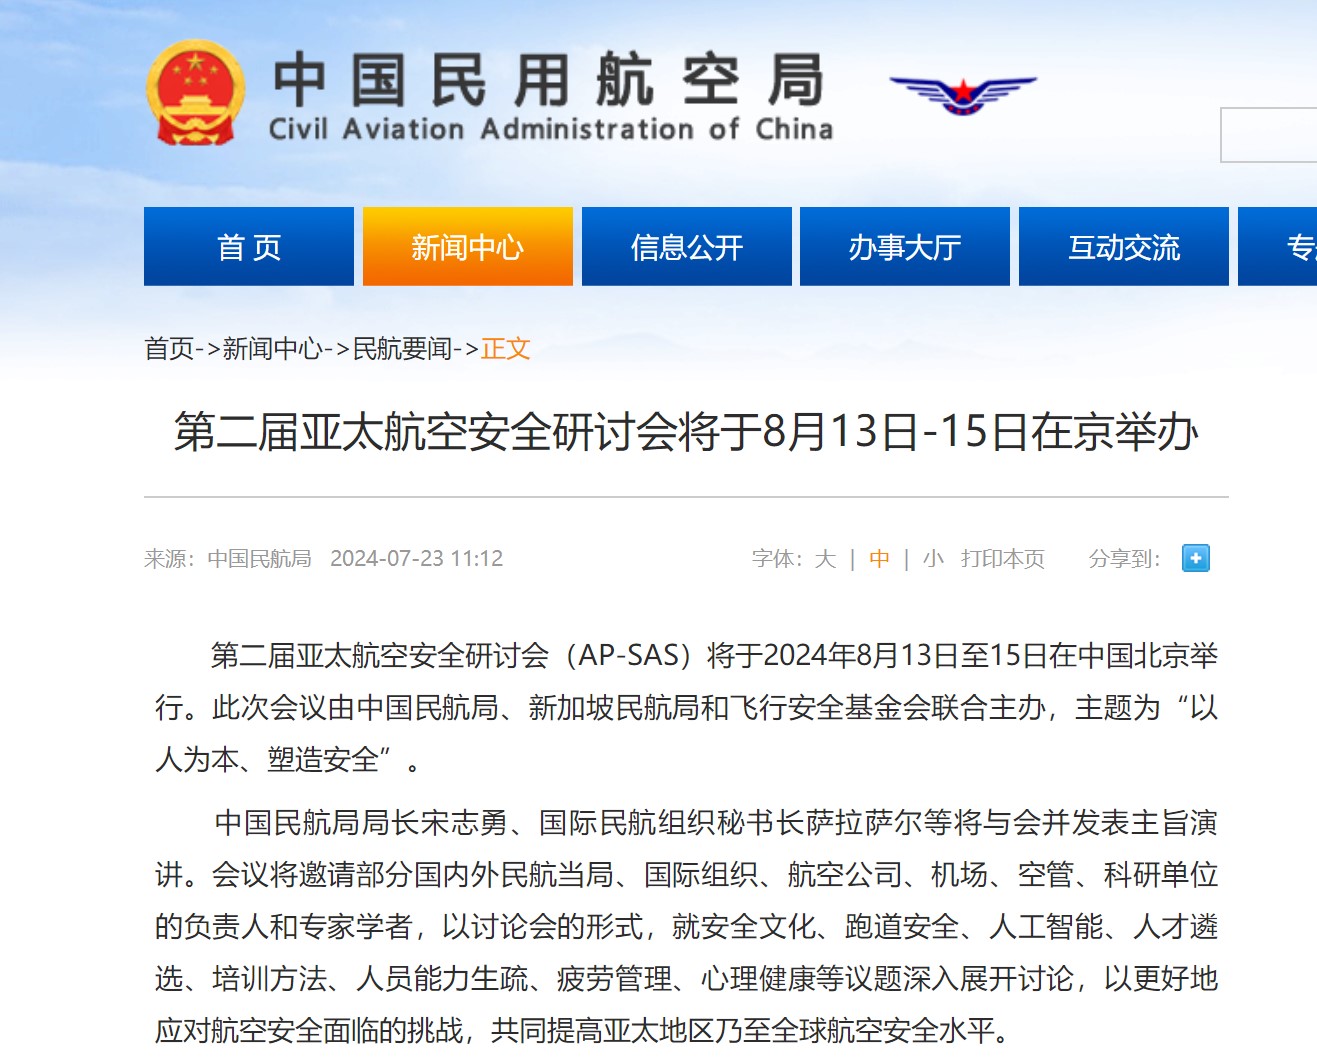 第二届亚太航空安全研讨会将于8月13日-15日在京举办